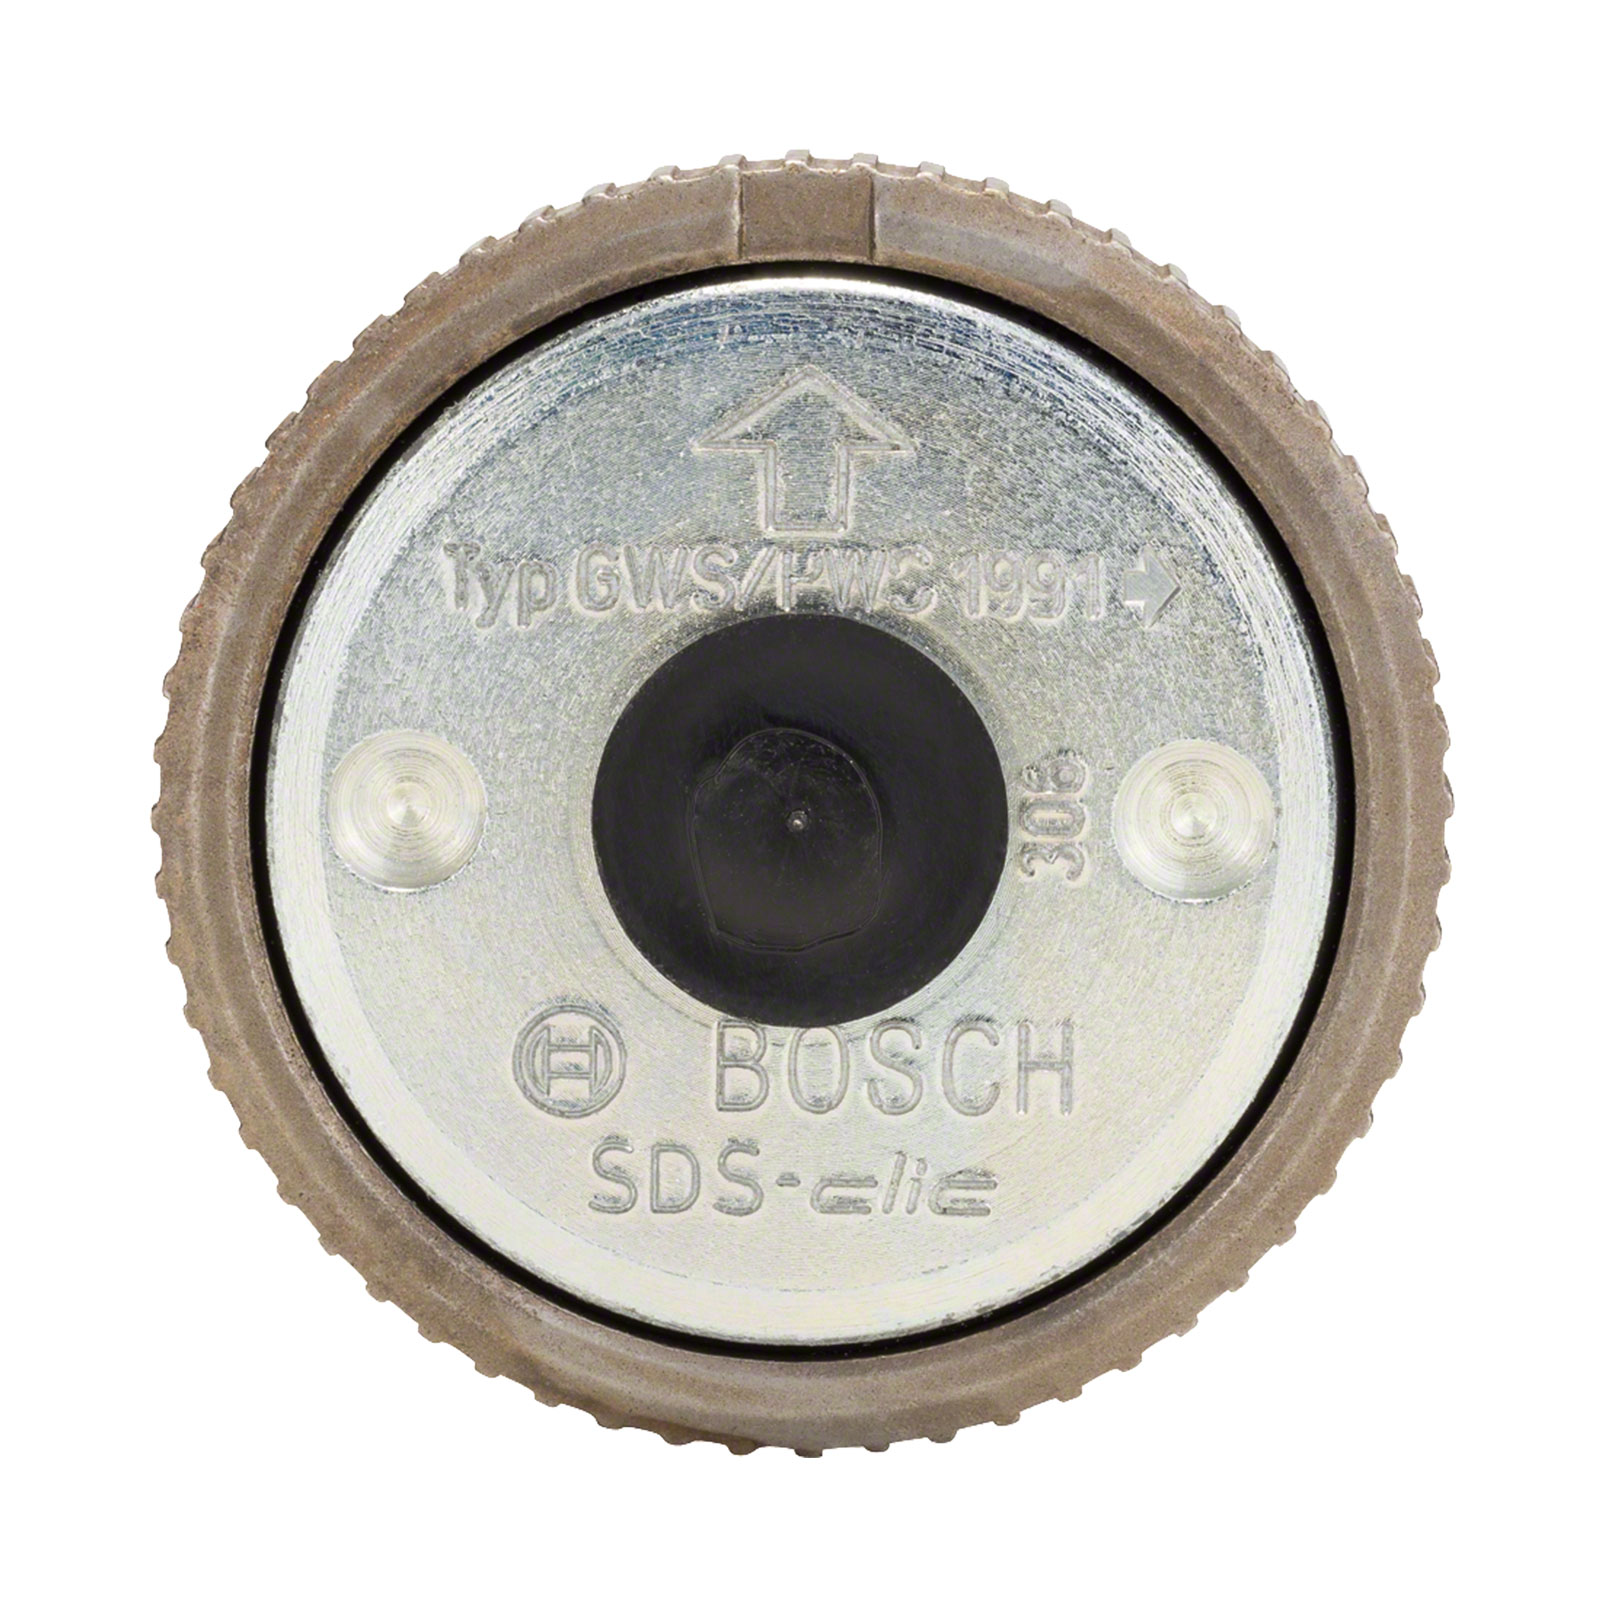 Bosch Professional SDS-CLIC Schnellspannm. Schnellspannmutter mit Bund